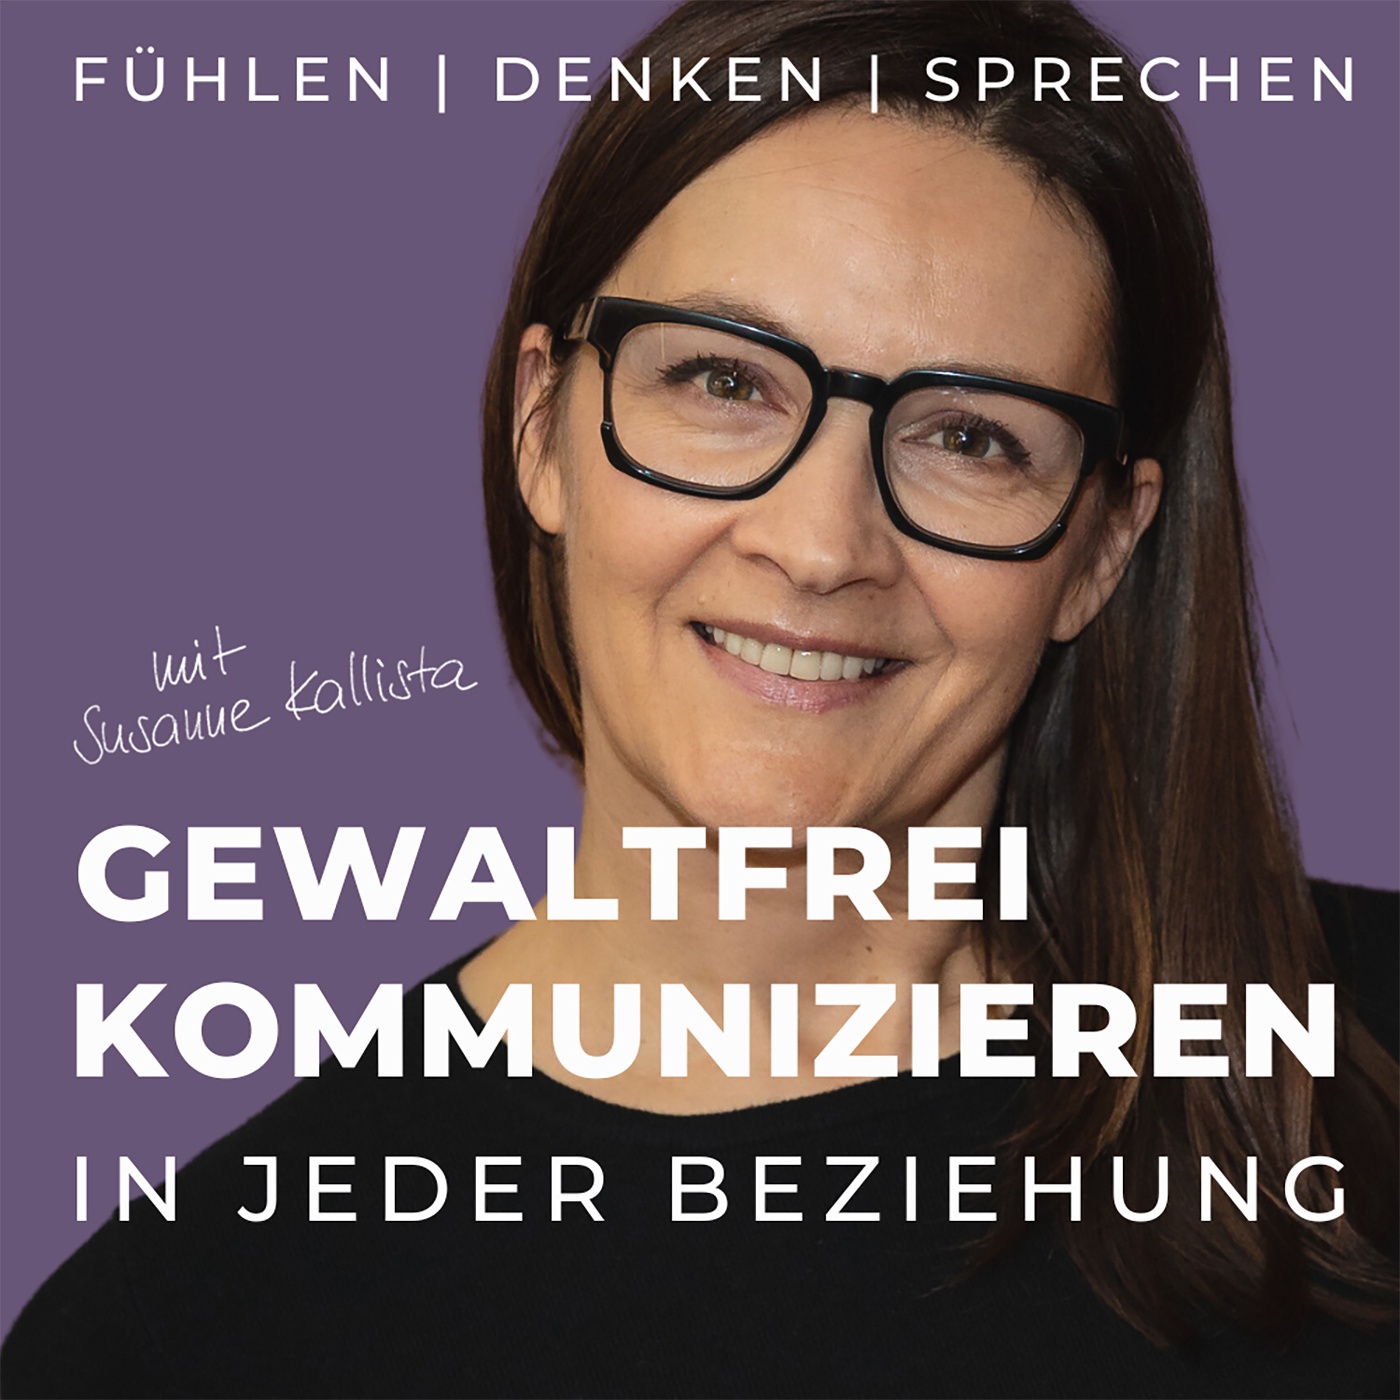 Kallista for Deutscher Podcastpreis